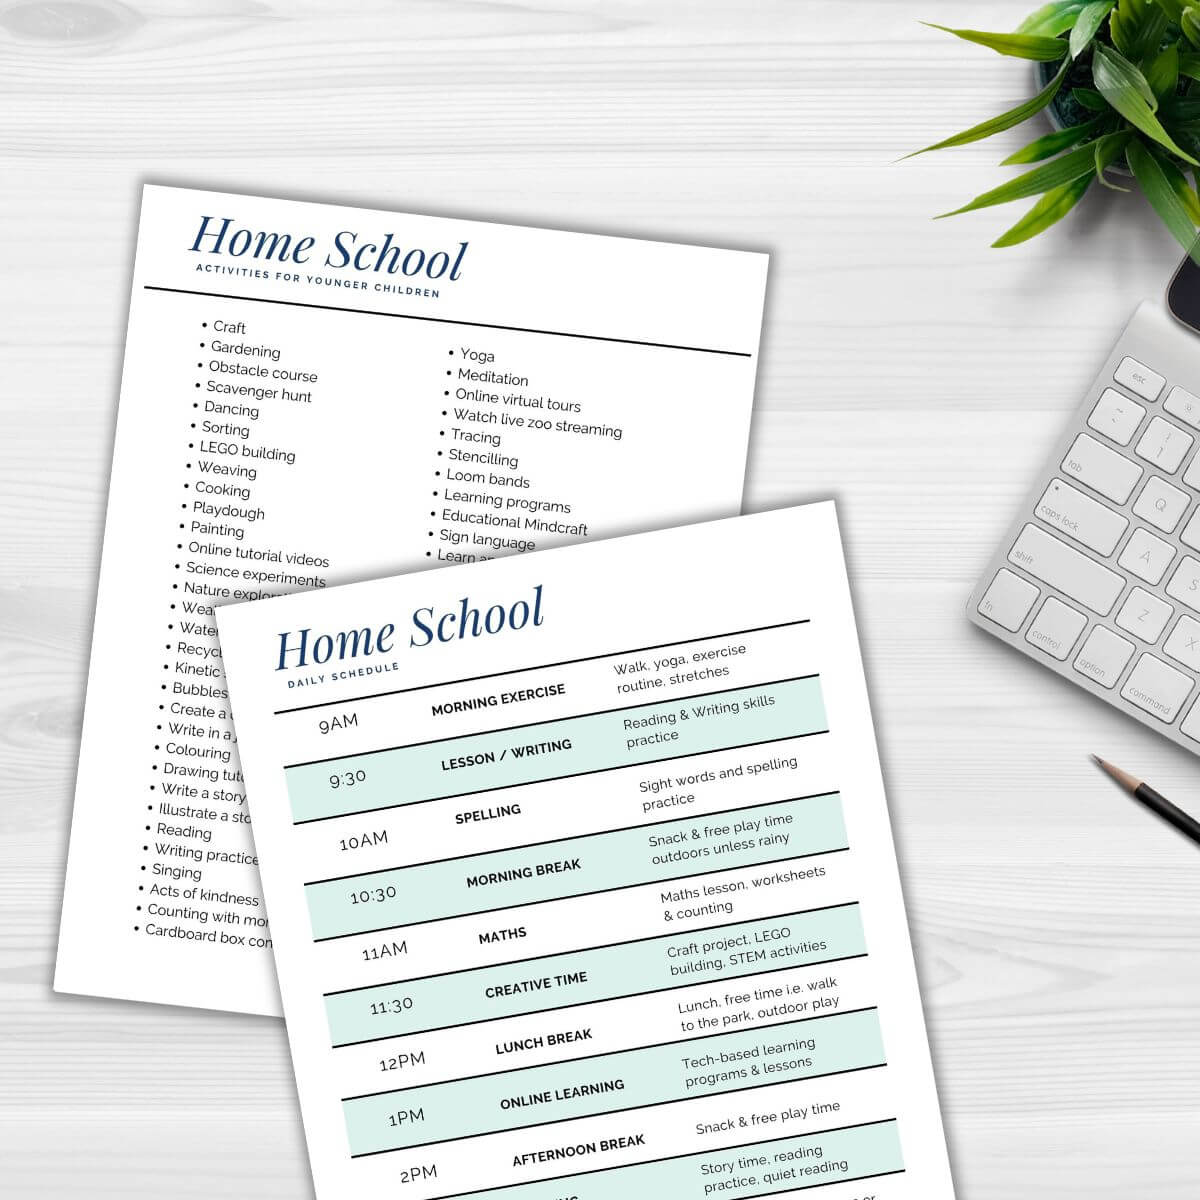 Printable home school schedule and activities.